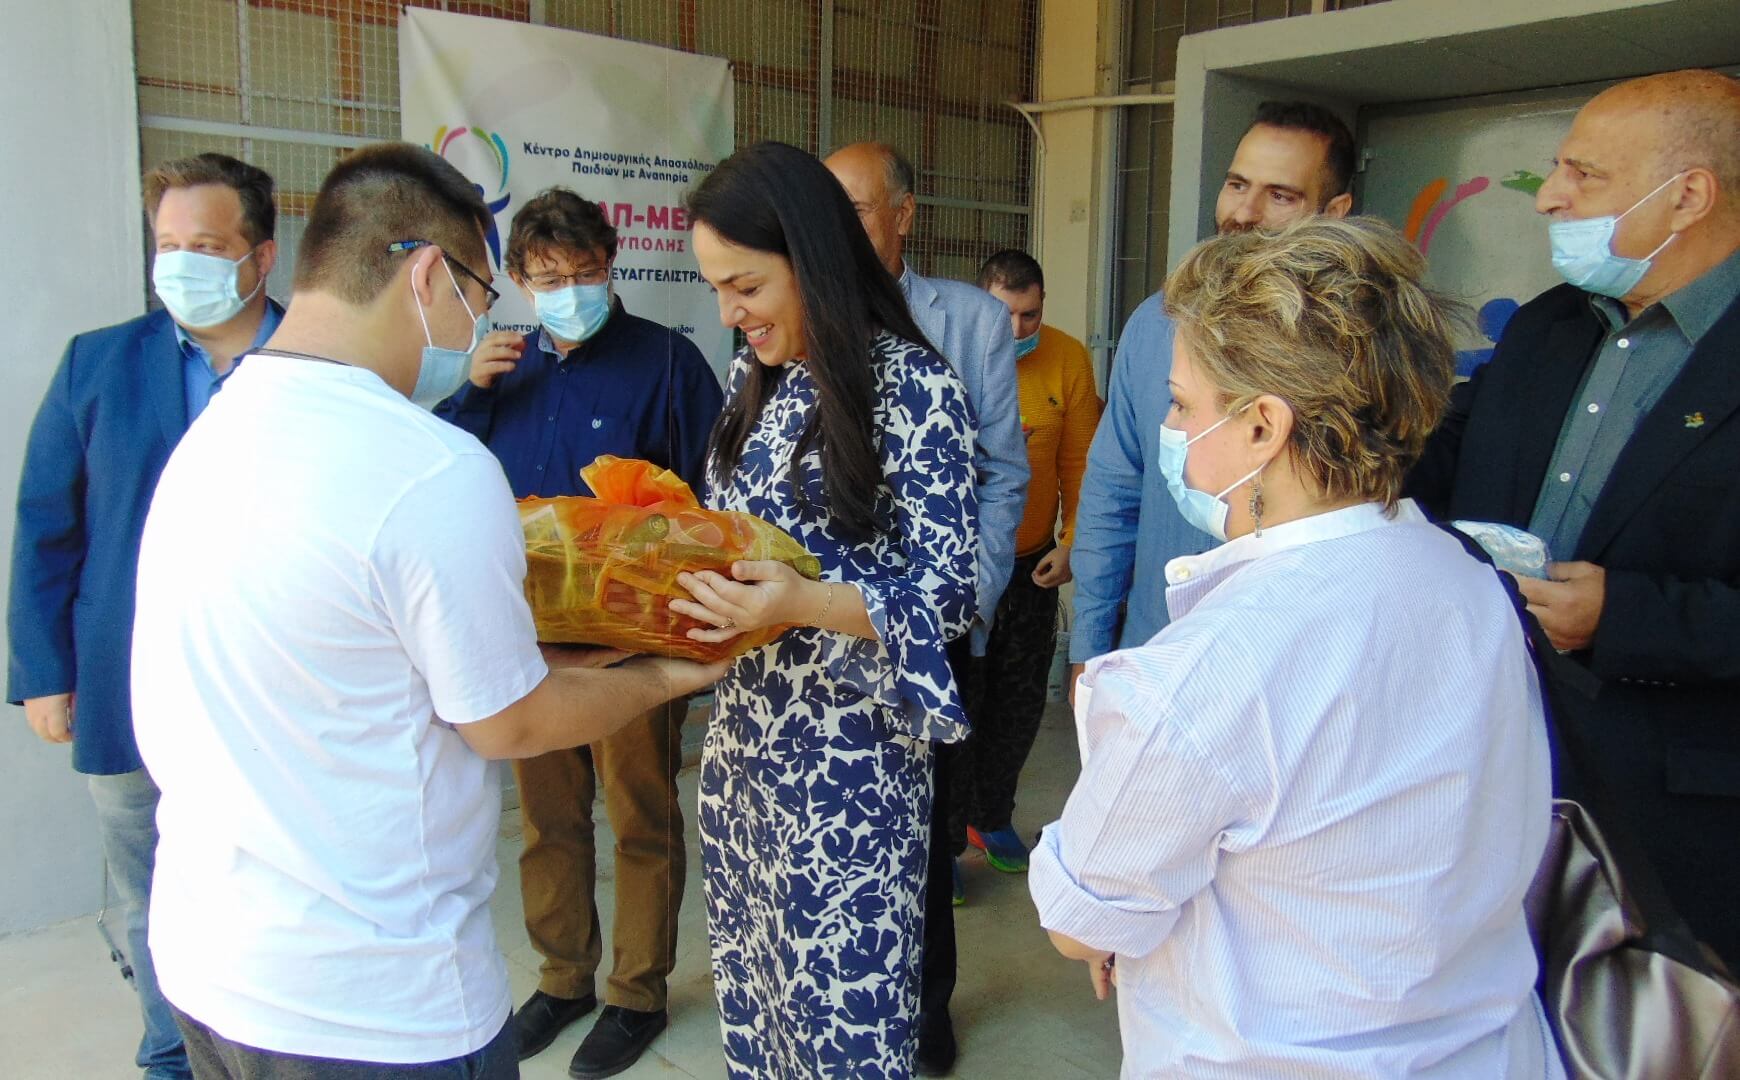 5 Στην Ηλιούπολη η Υφυπουργός Δόμνα Μιχαηλίδου - Επισκέφθηκε Το ΚΔΑΠ μεΑ "Παναγία Ευαγγελίστρια"